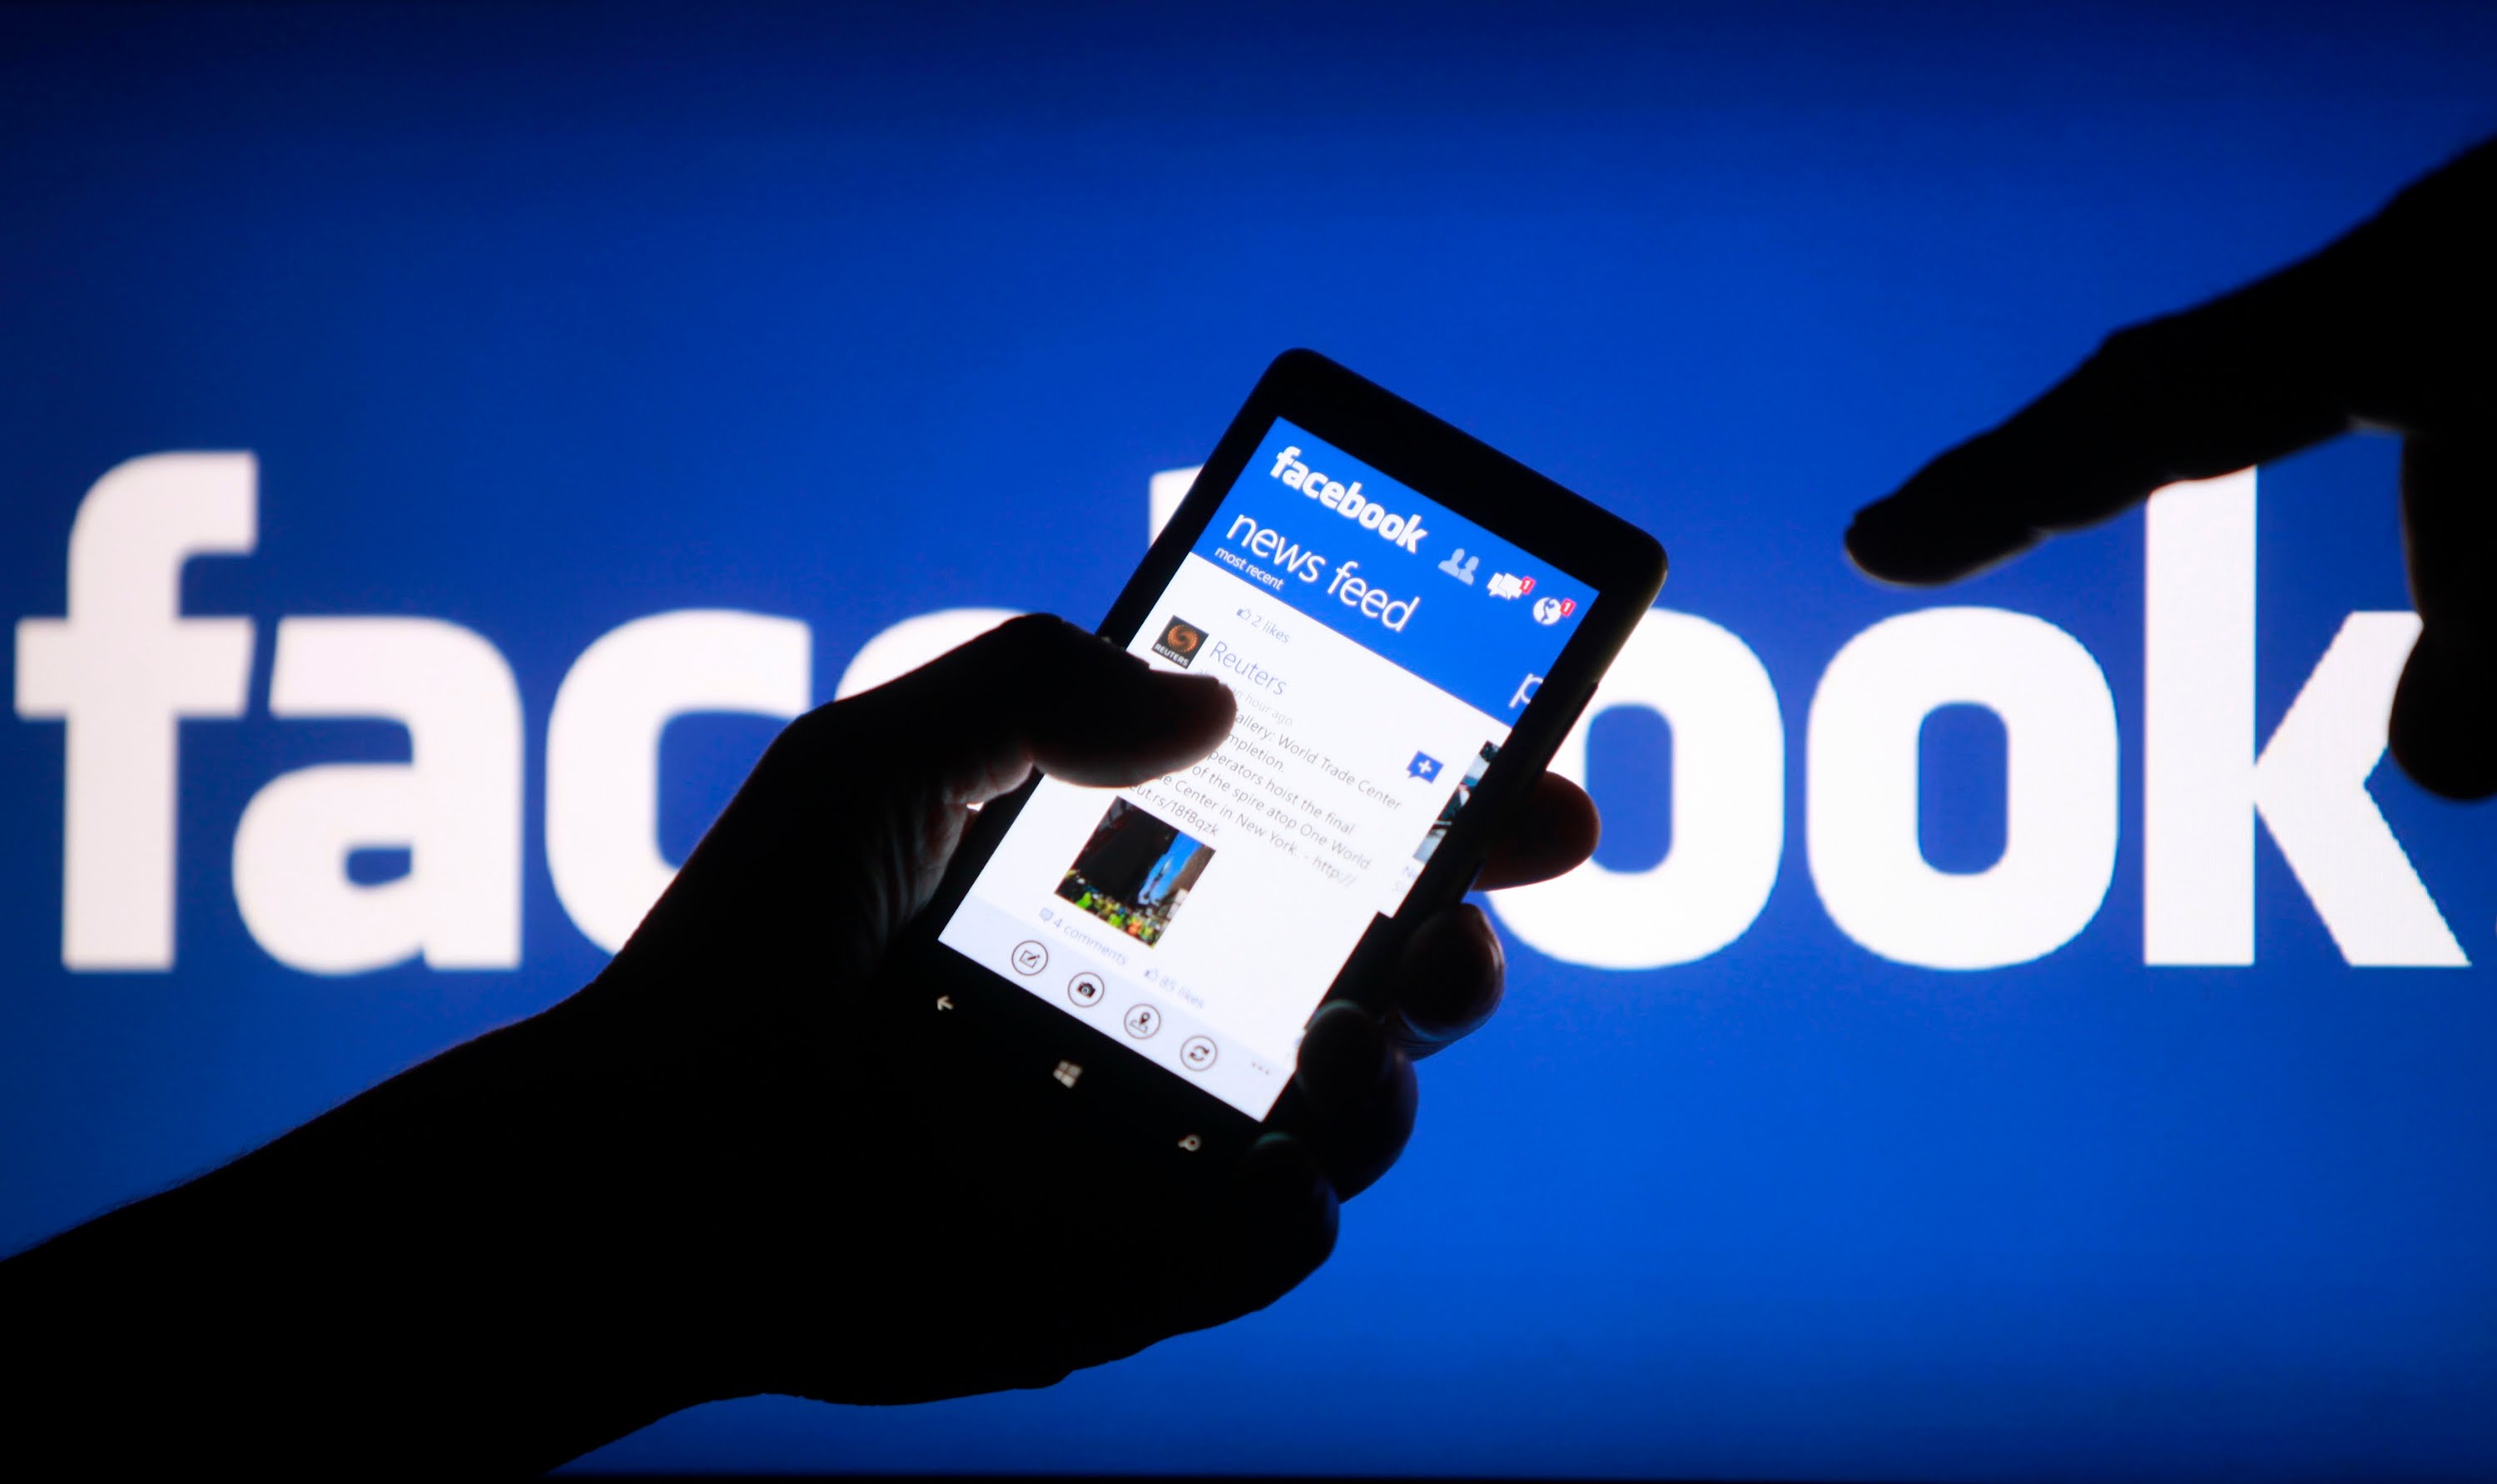 ΑΑΔΕ: Μέσω Facebook ο εντοπισμός ύποπτων συναλλαγών